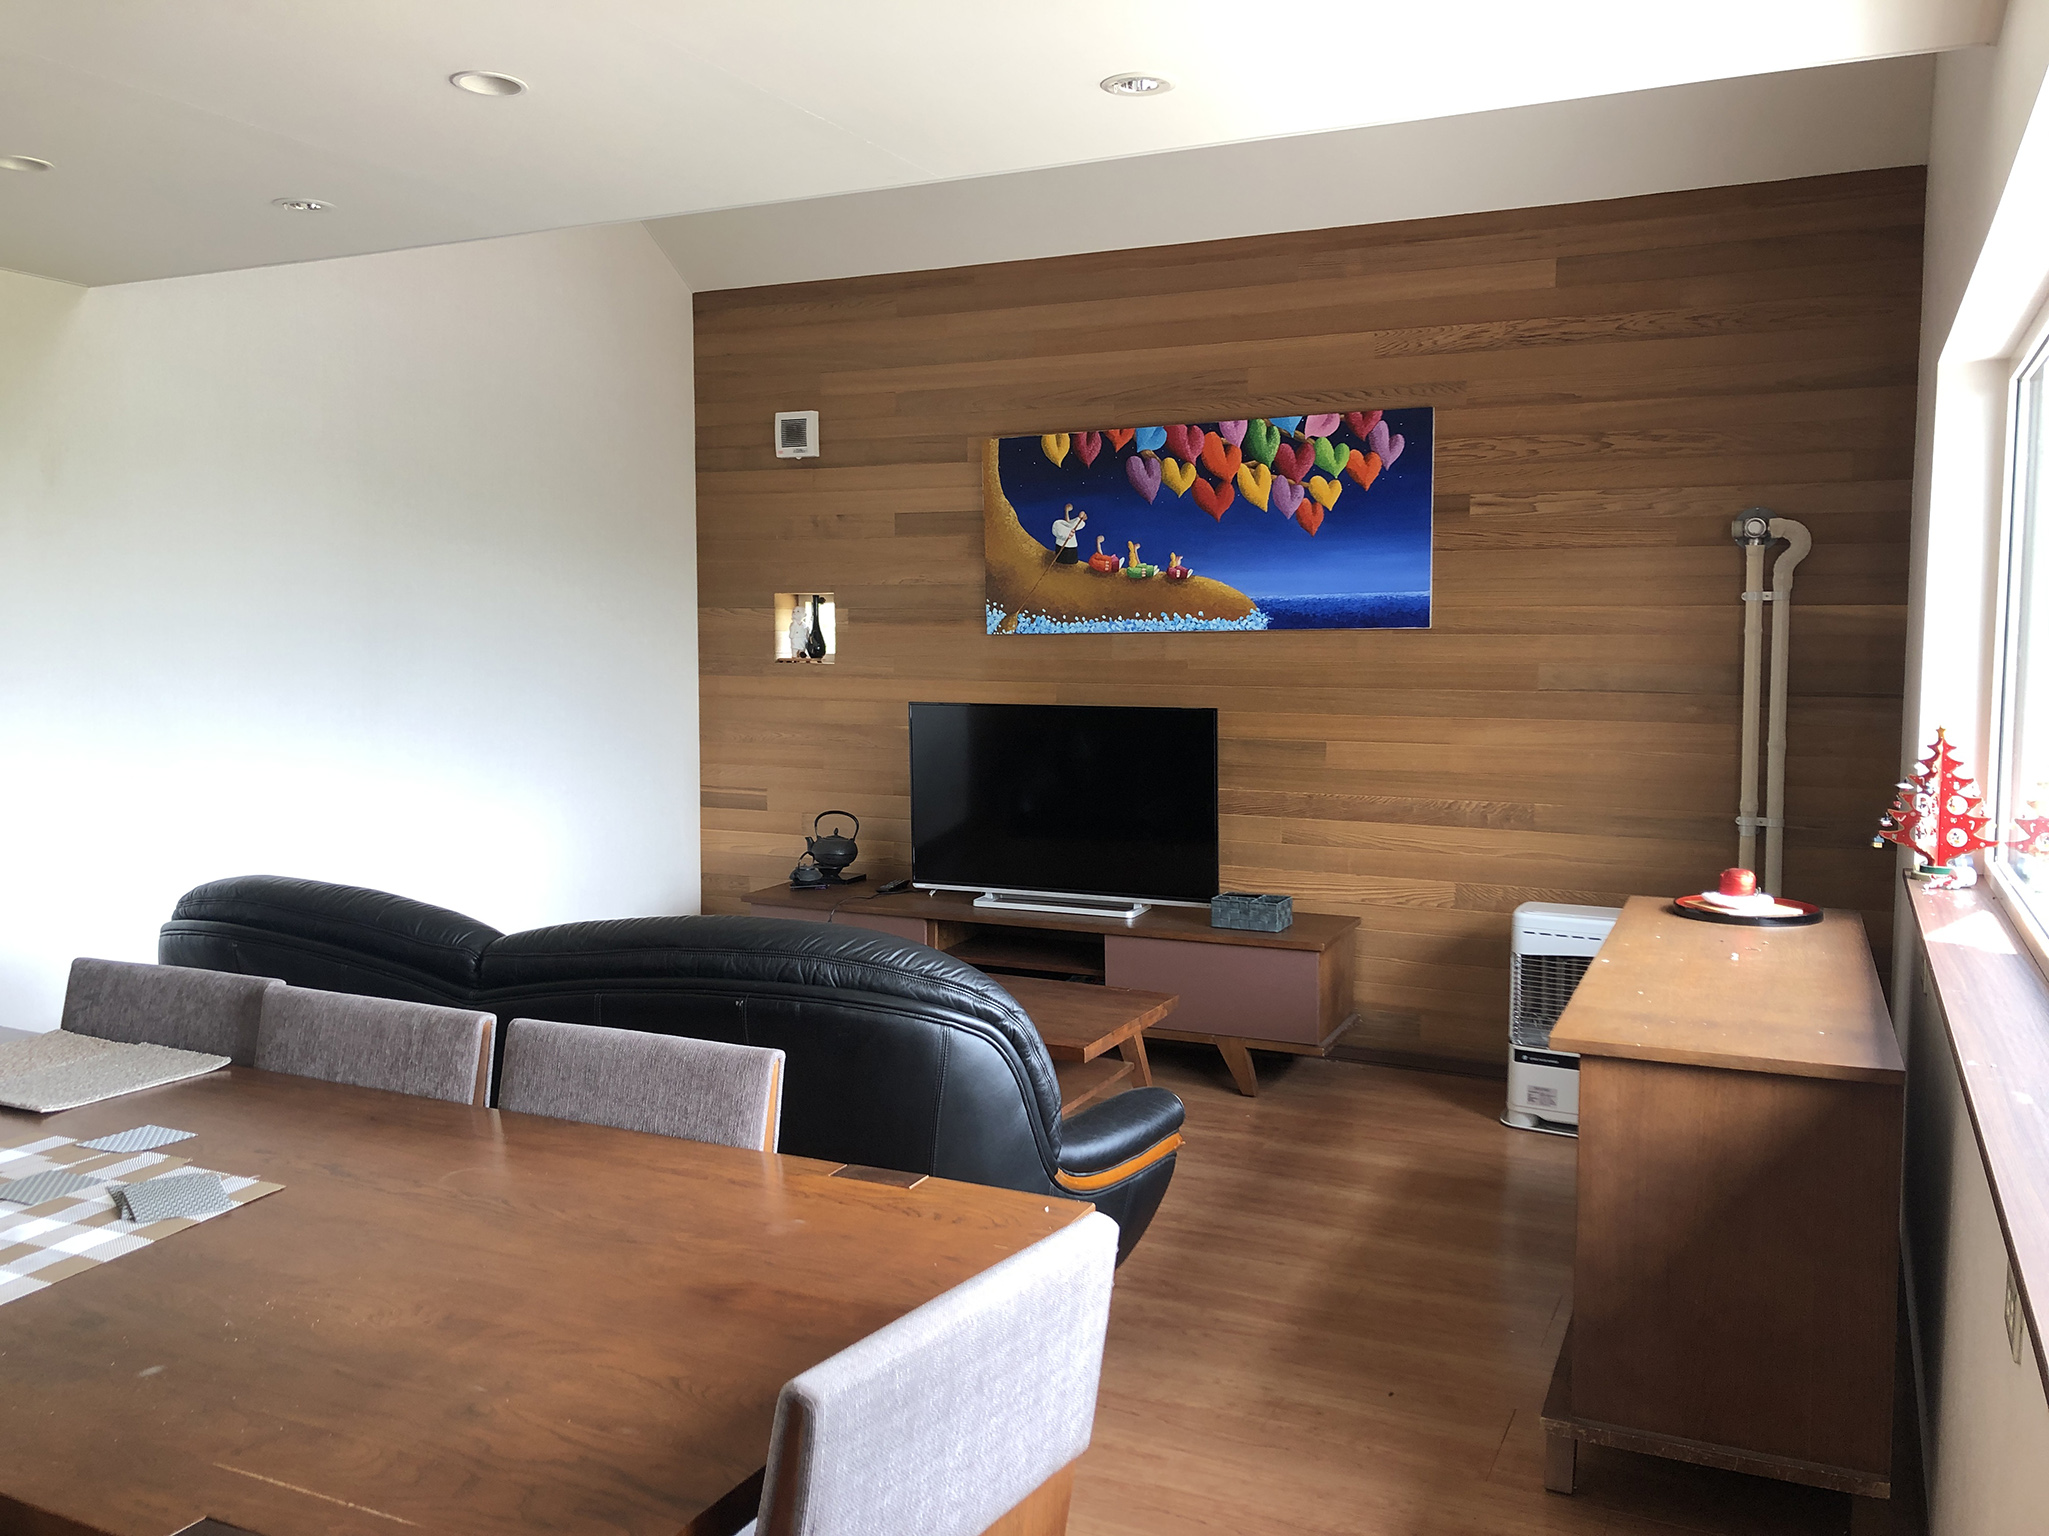 Sakura Lodge - TV in living room